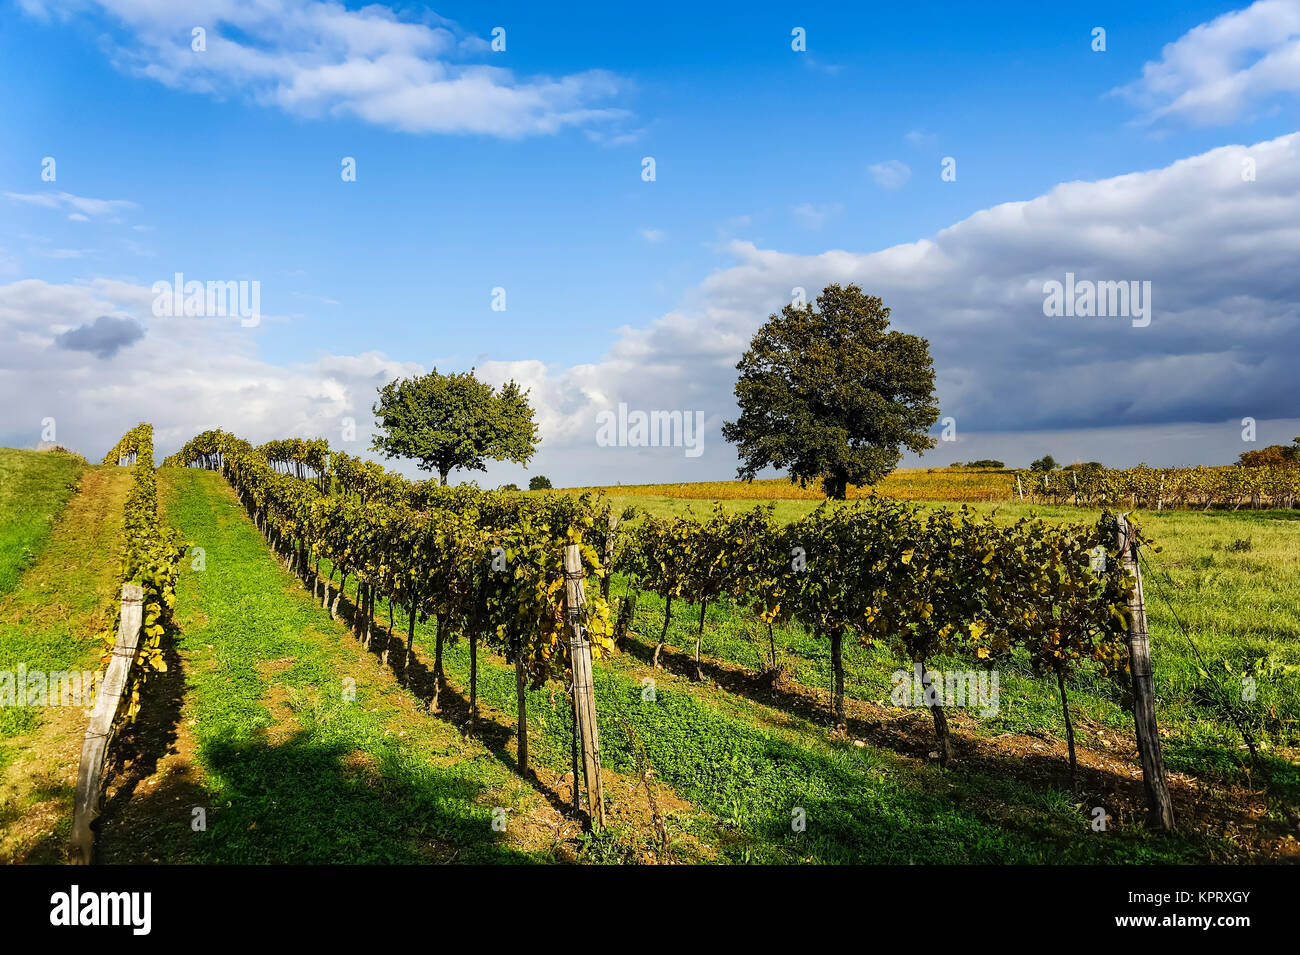 Vineyard in Burgenland near Neusiedlersee Stock Photo